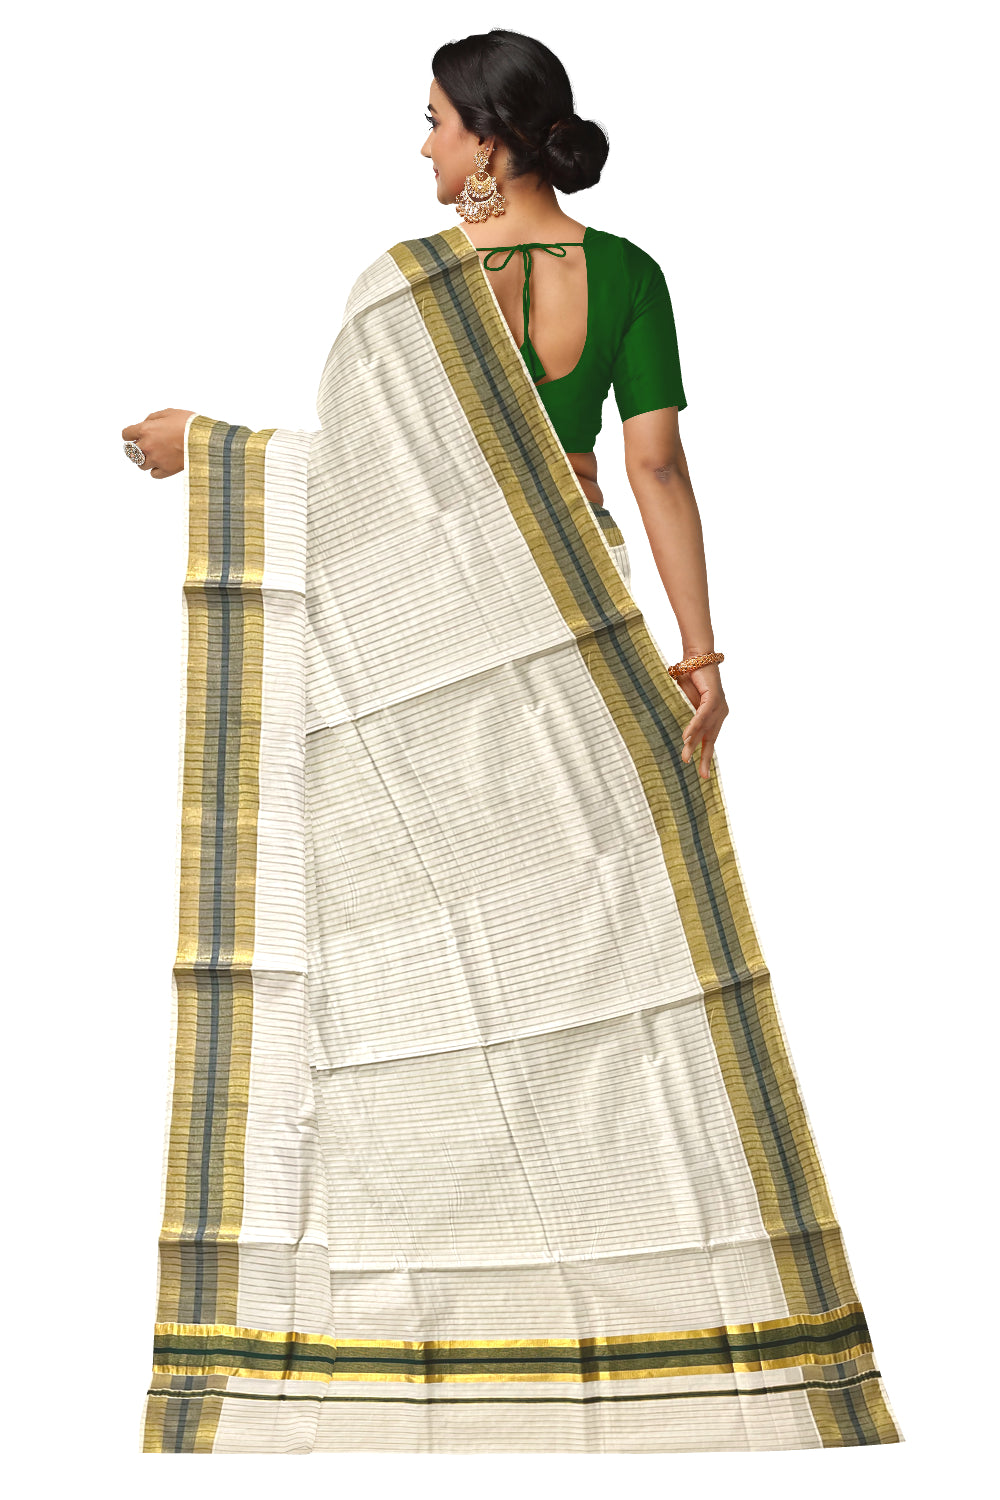 Pure Cotton Kerala Kasavu Lines Design Saree with Green Border